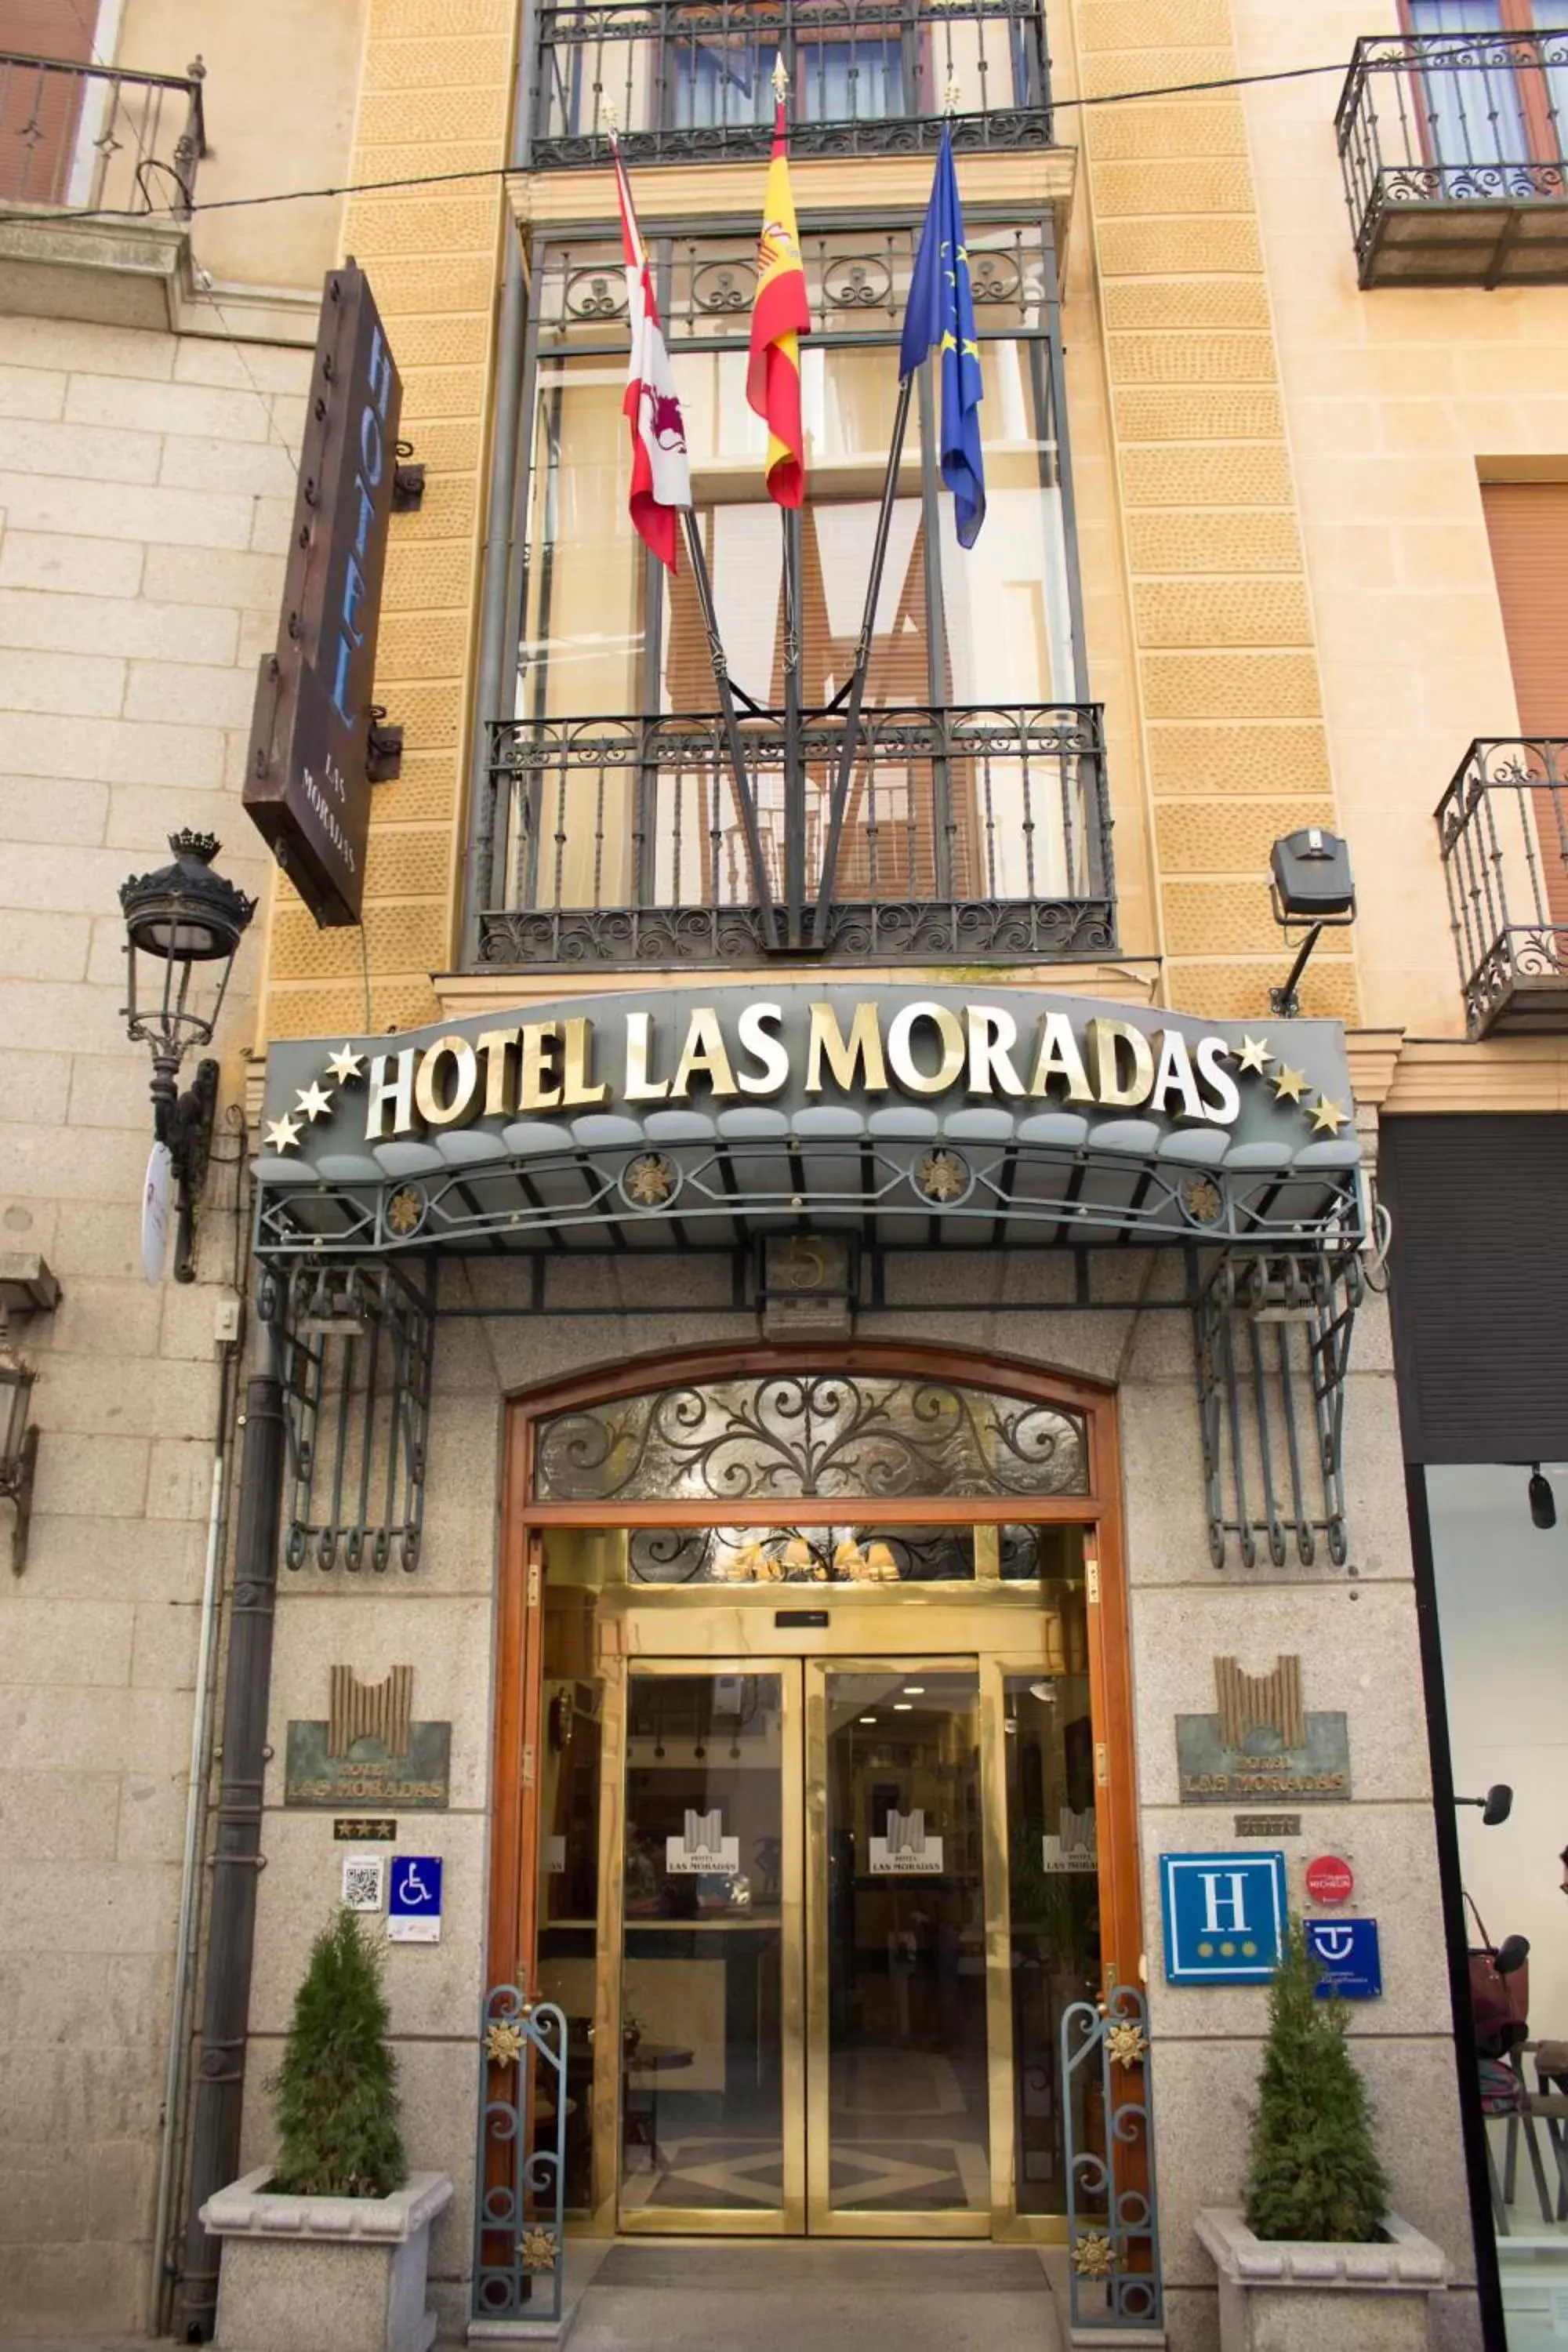 Facade/entrance in Hotel Las Moradas